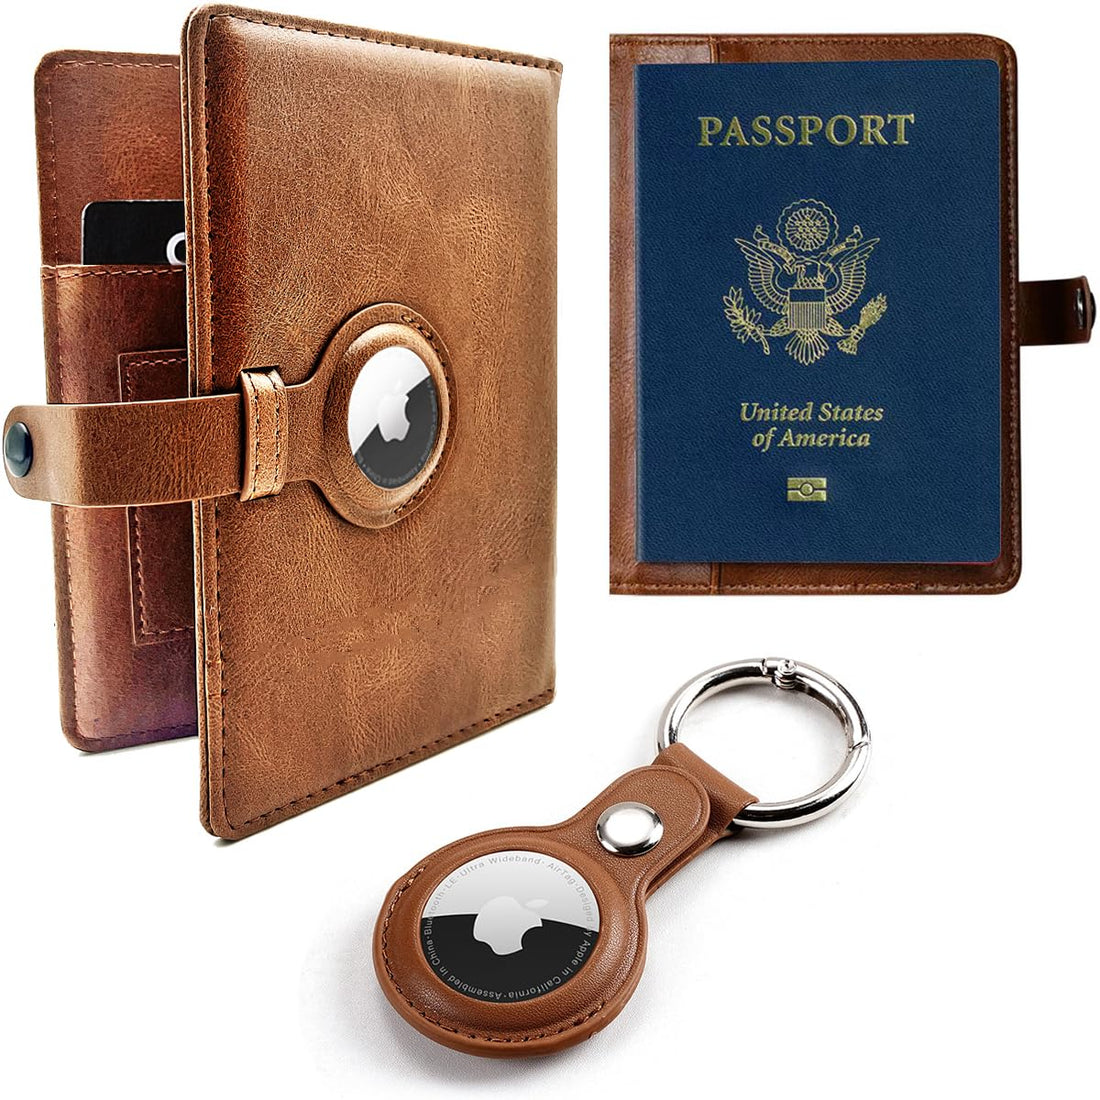 Travel Passport Wallet with Airtag Holder,RFID Passport Vaccine Card Holder, Brown B, Business